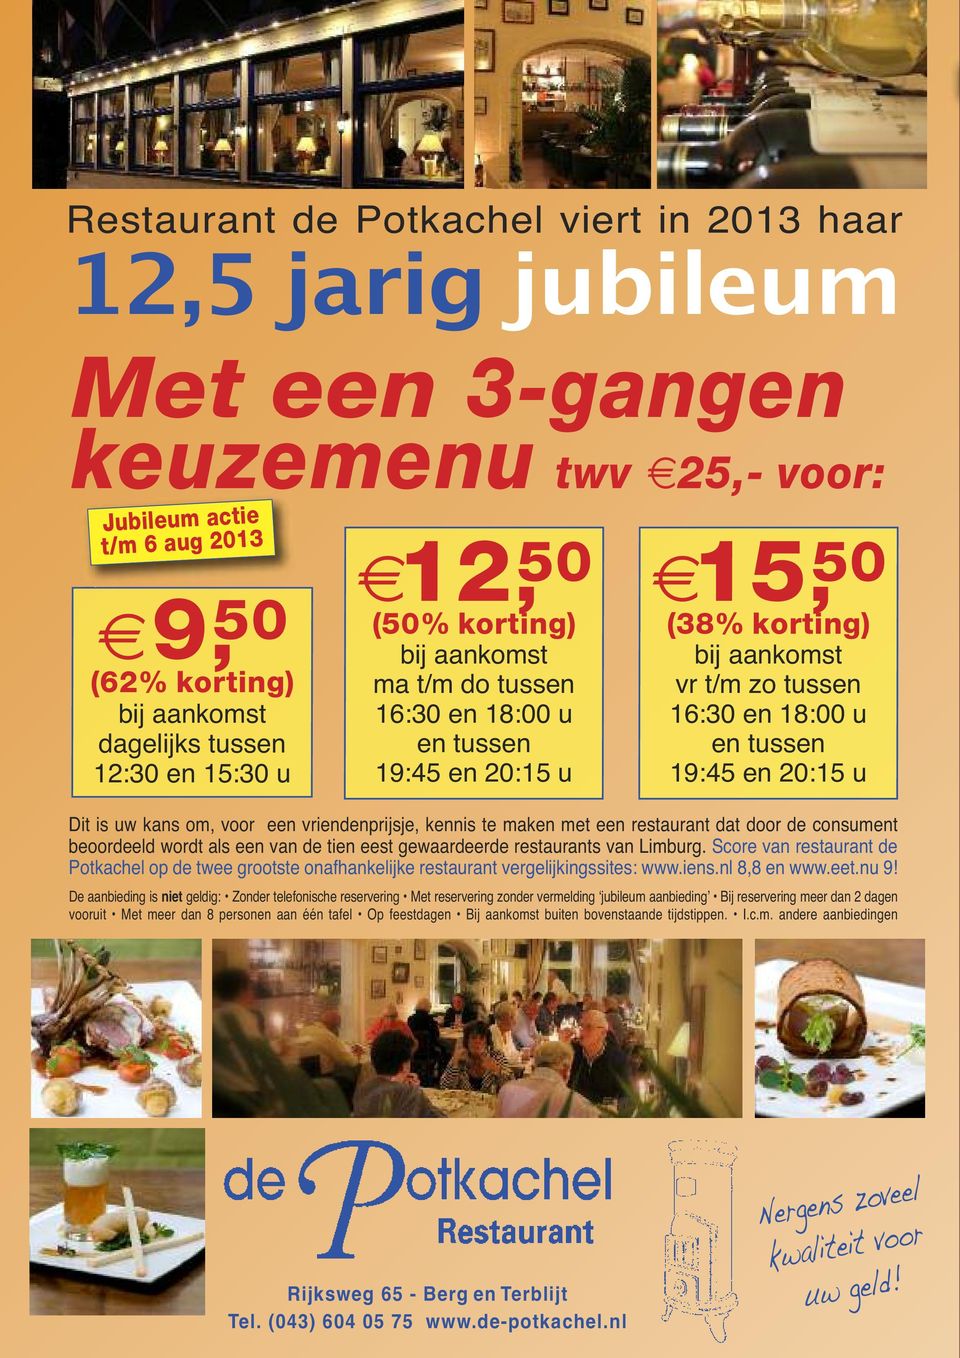 uw kans om, voor een vriendenprijsje, kennis te maken met een restaurant dat door de consument beoordeeld wordt als een van de tien eest gewaardeerde restaurants van Limburg.